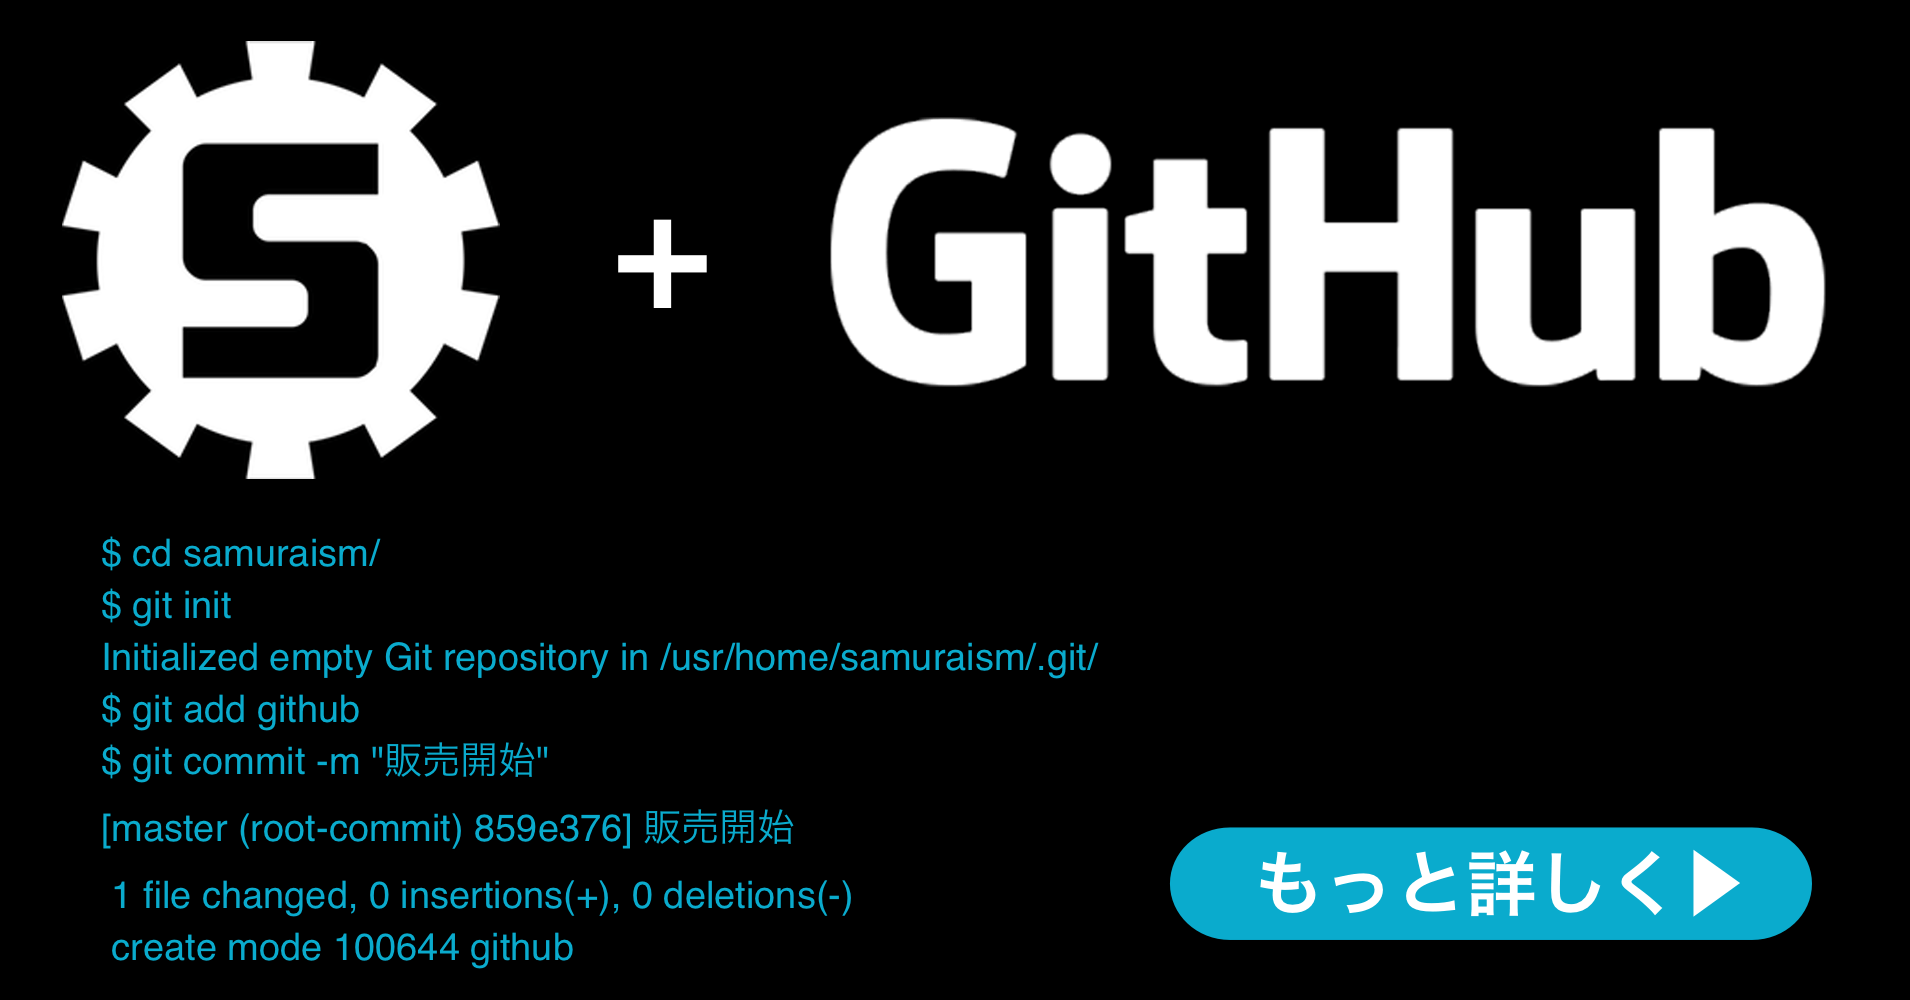 株式会社サムライズム  GitHub社の GitHub Enterprise  のランディングページを公開いたしました